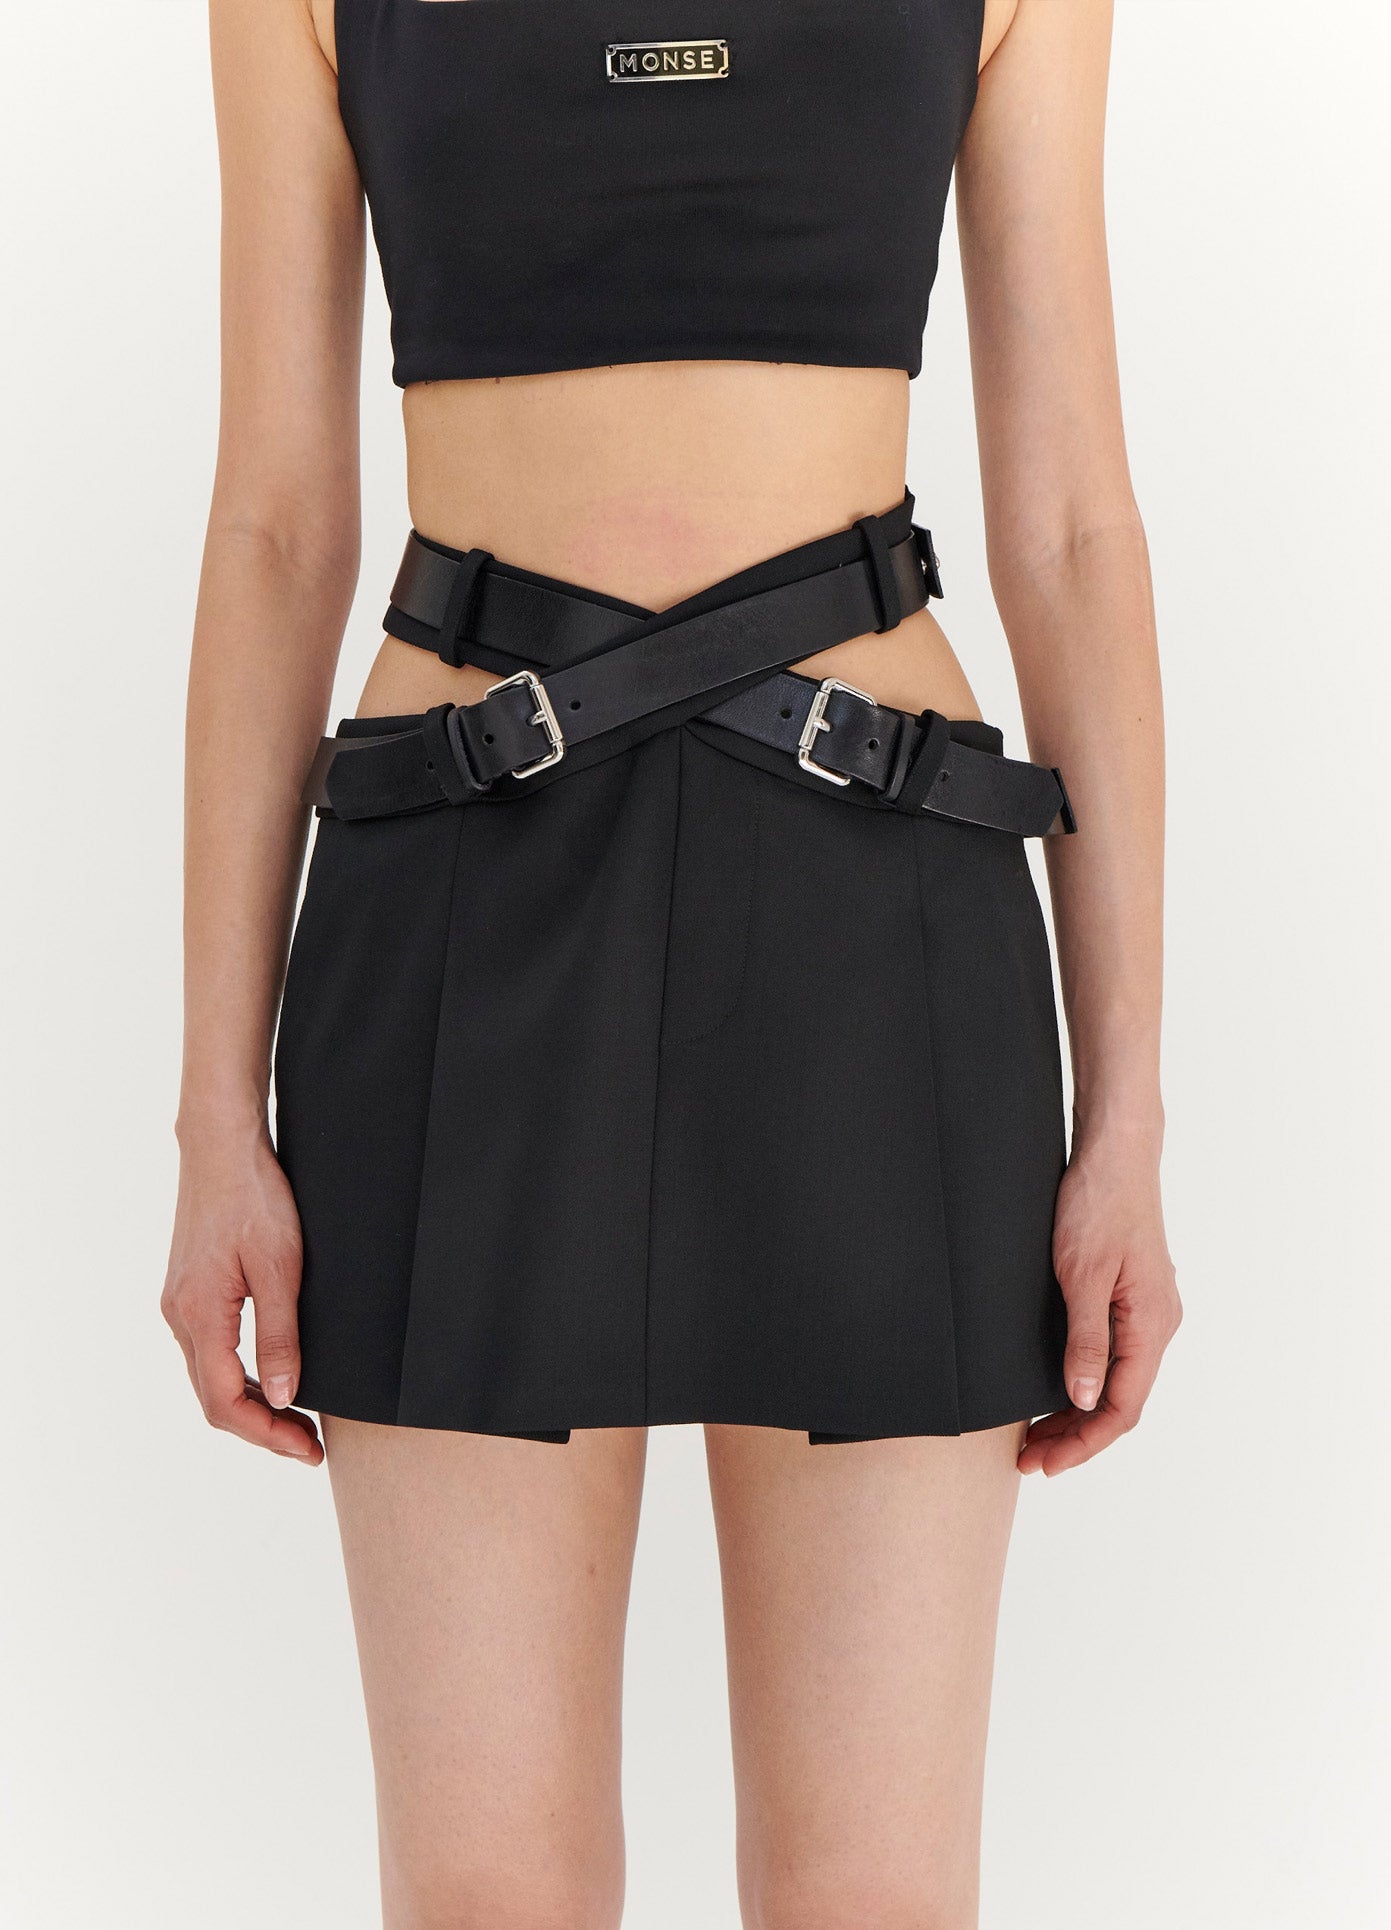 MONSE Criss Cross Waist Belted Mini Skirt in Black on Model Front View